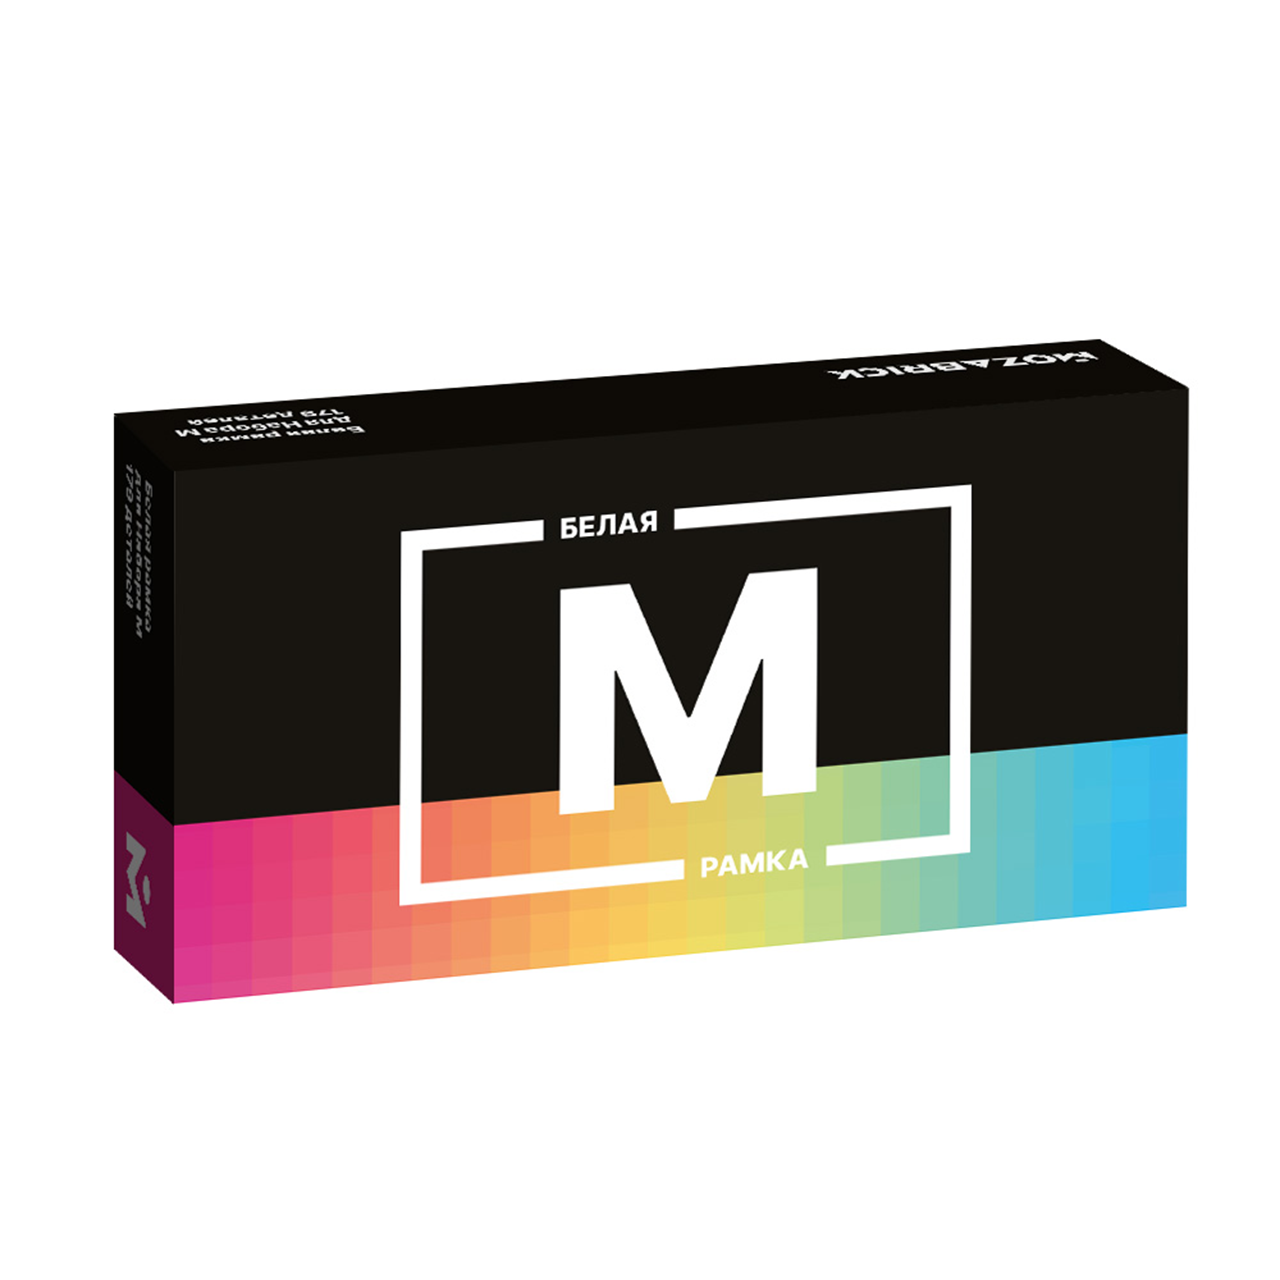 Купить рамка MOZABRICK для Набора M БЕЛАЯ, дополнительный набор, цены на конструкторы MOZABRICK в интернет-магазинах на Мегамаркет